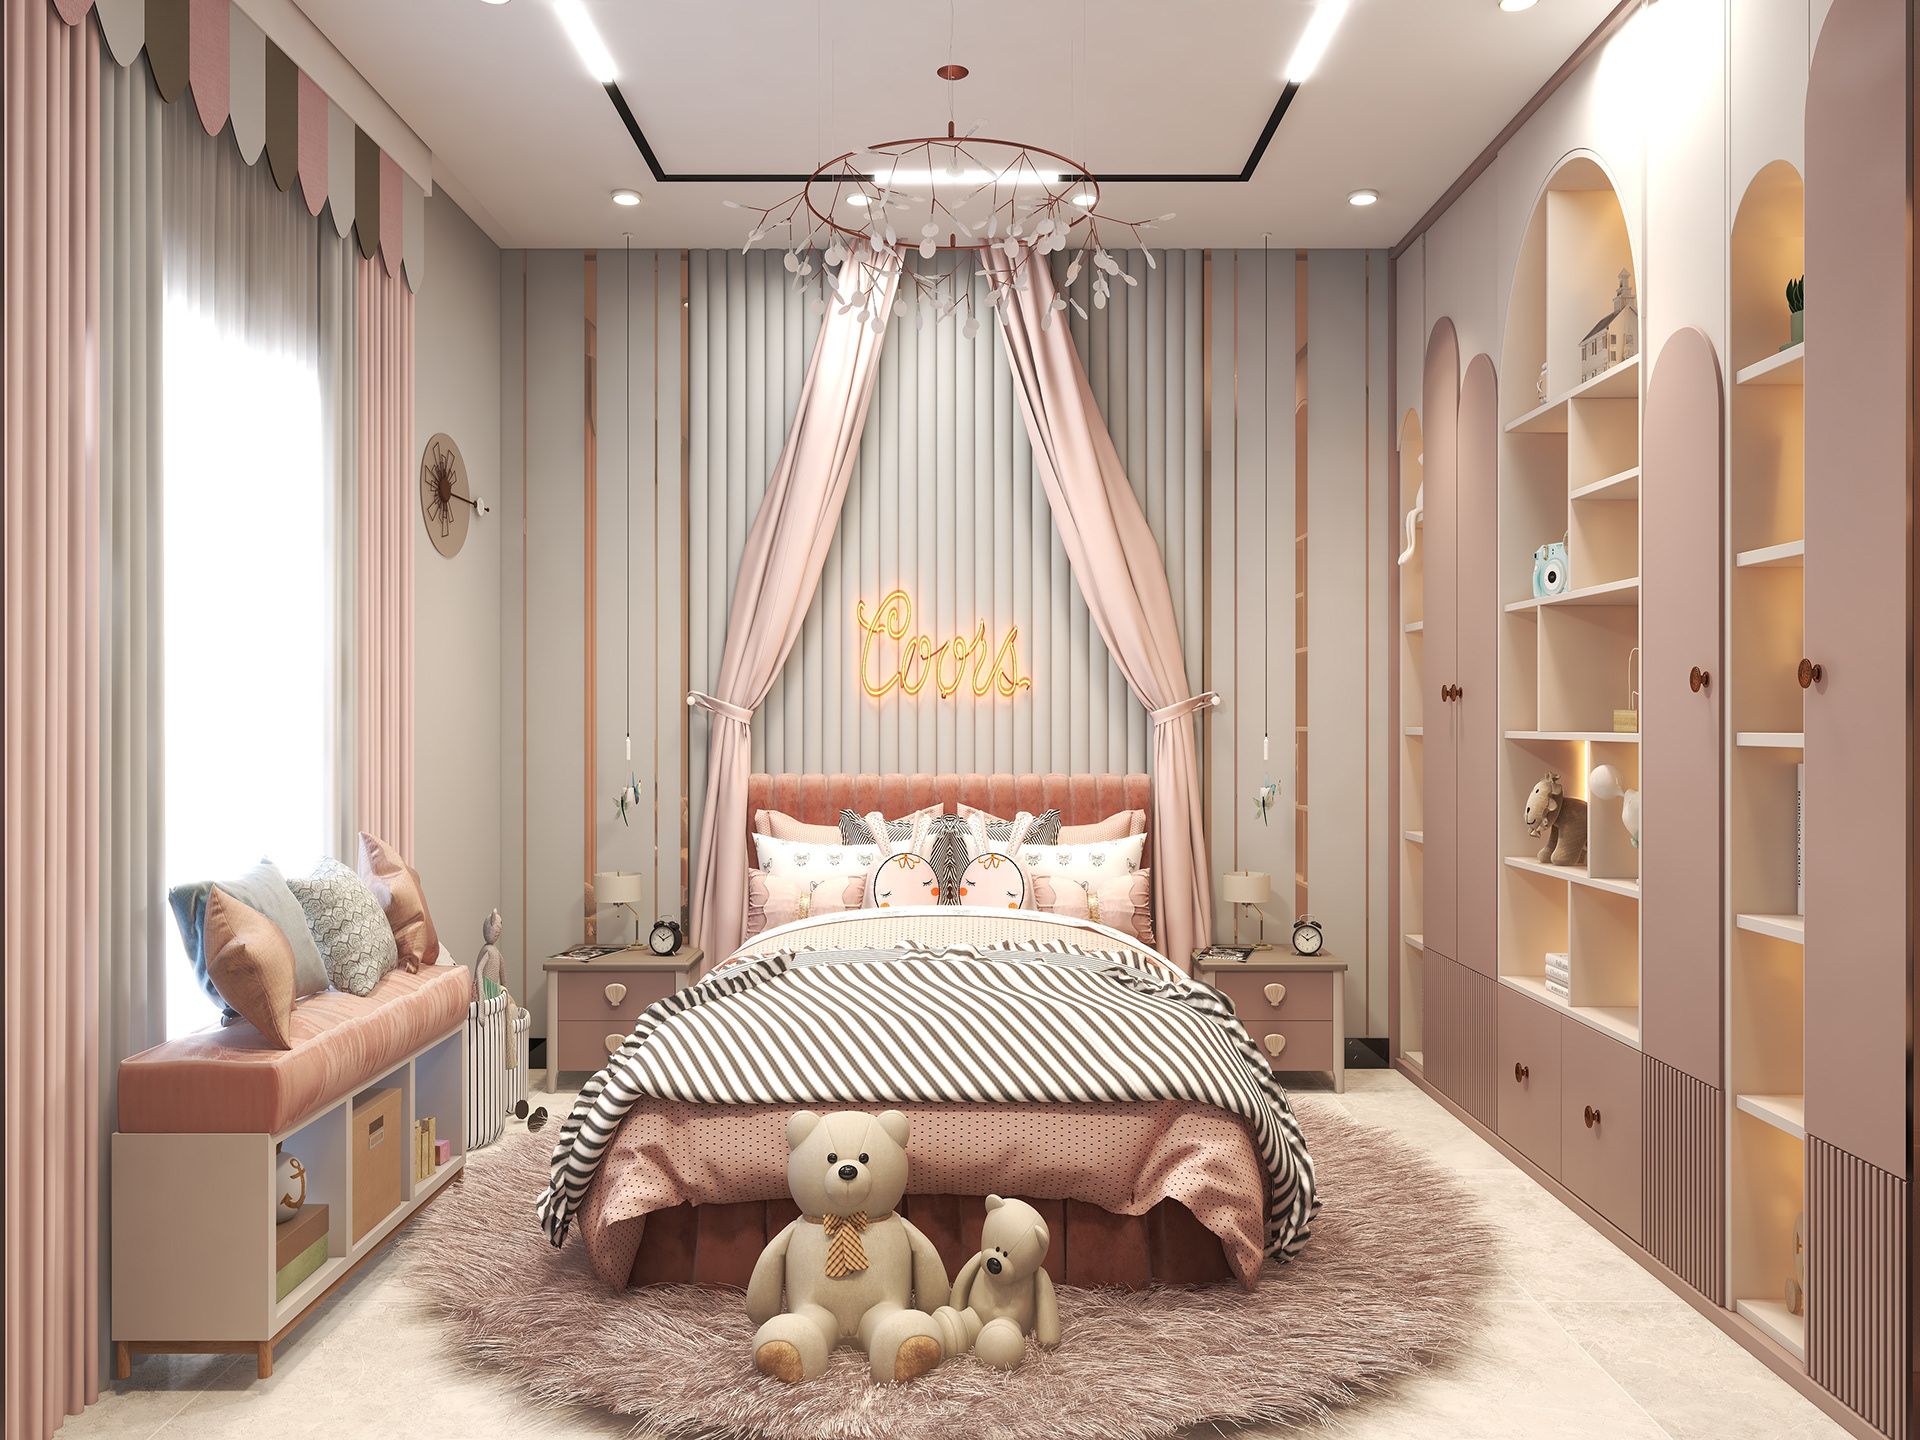 Không gian phòng ngủ với nội thất màu hồng phối hợp thêm các món nội thất có màu xanh